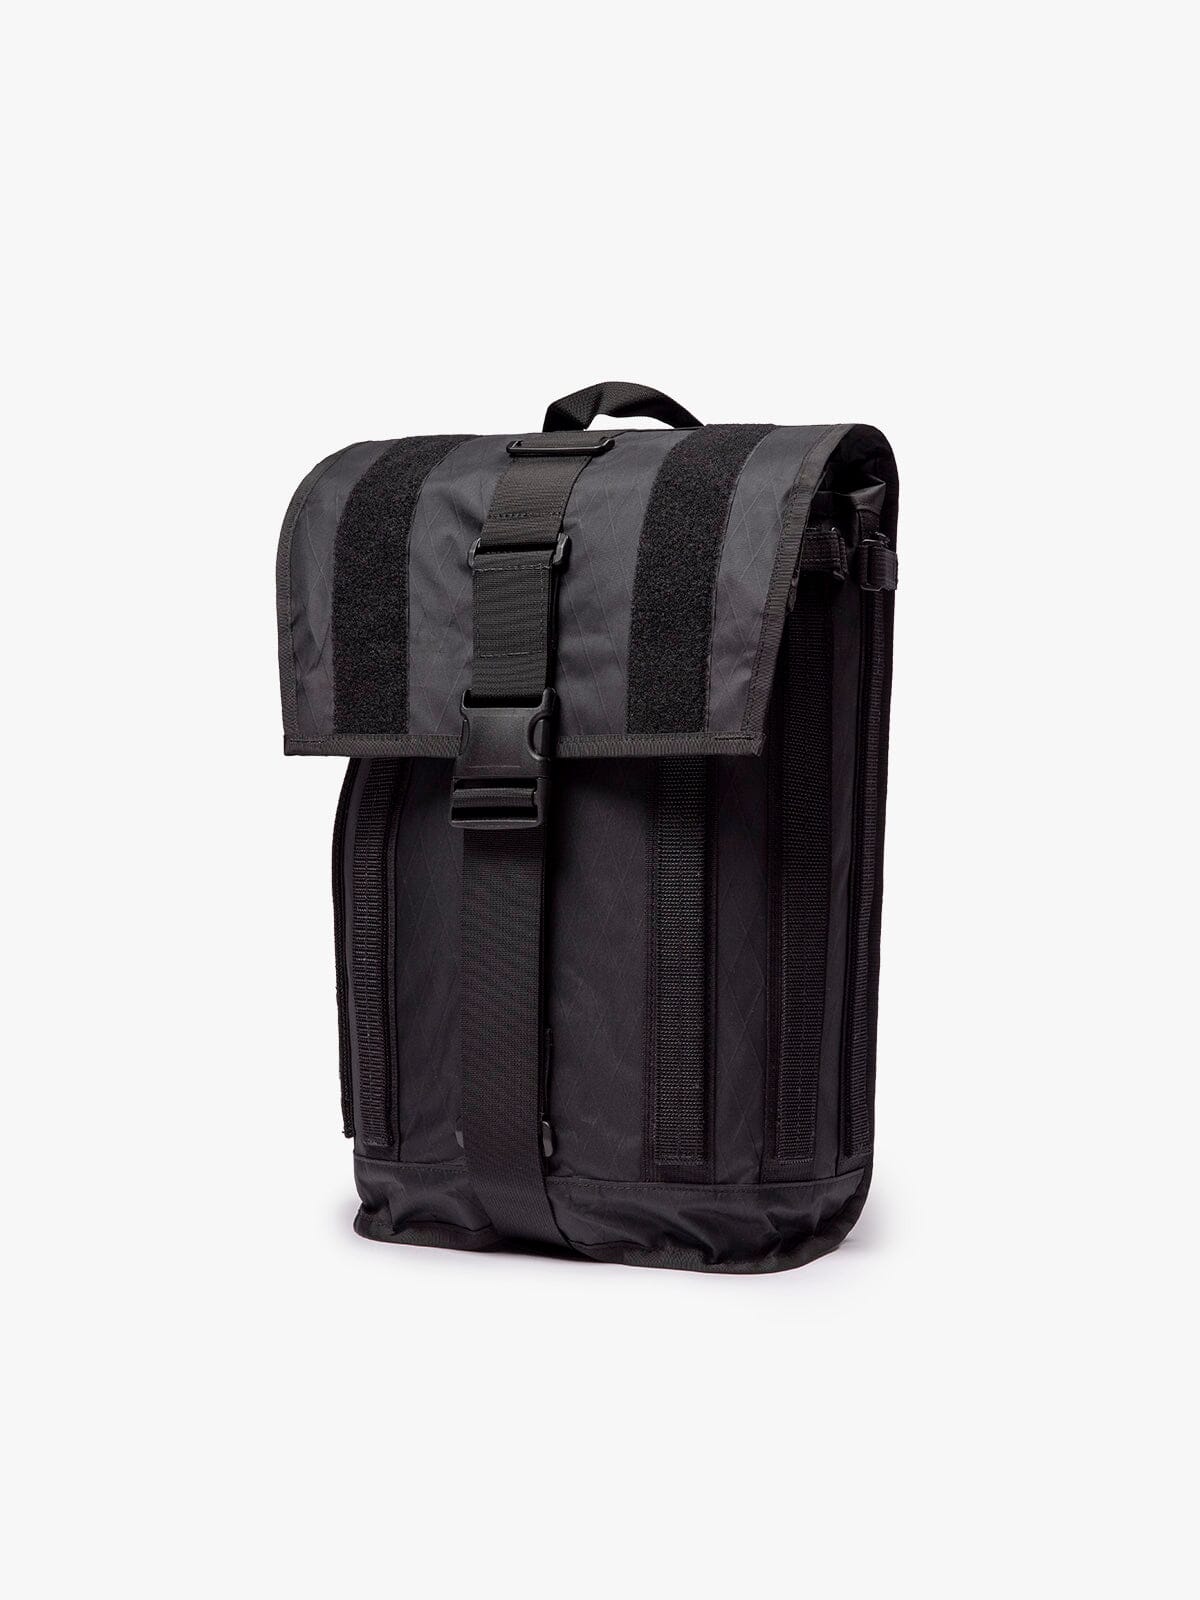 R6 Arkiv Field Pack 20L by Mission Workshop - Weersbestendige tassen & technische kleding - San Francisco & Los Angeles - Gebouwd om te weerstaan - Voor altijd gegarandeerd